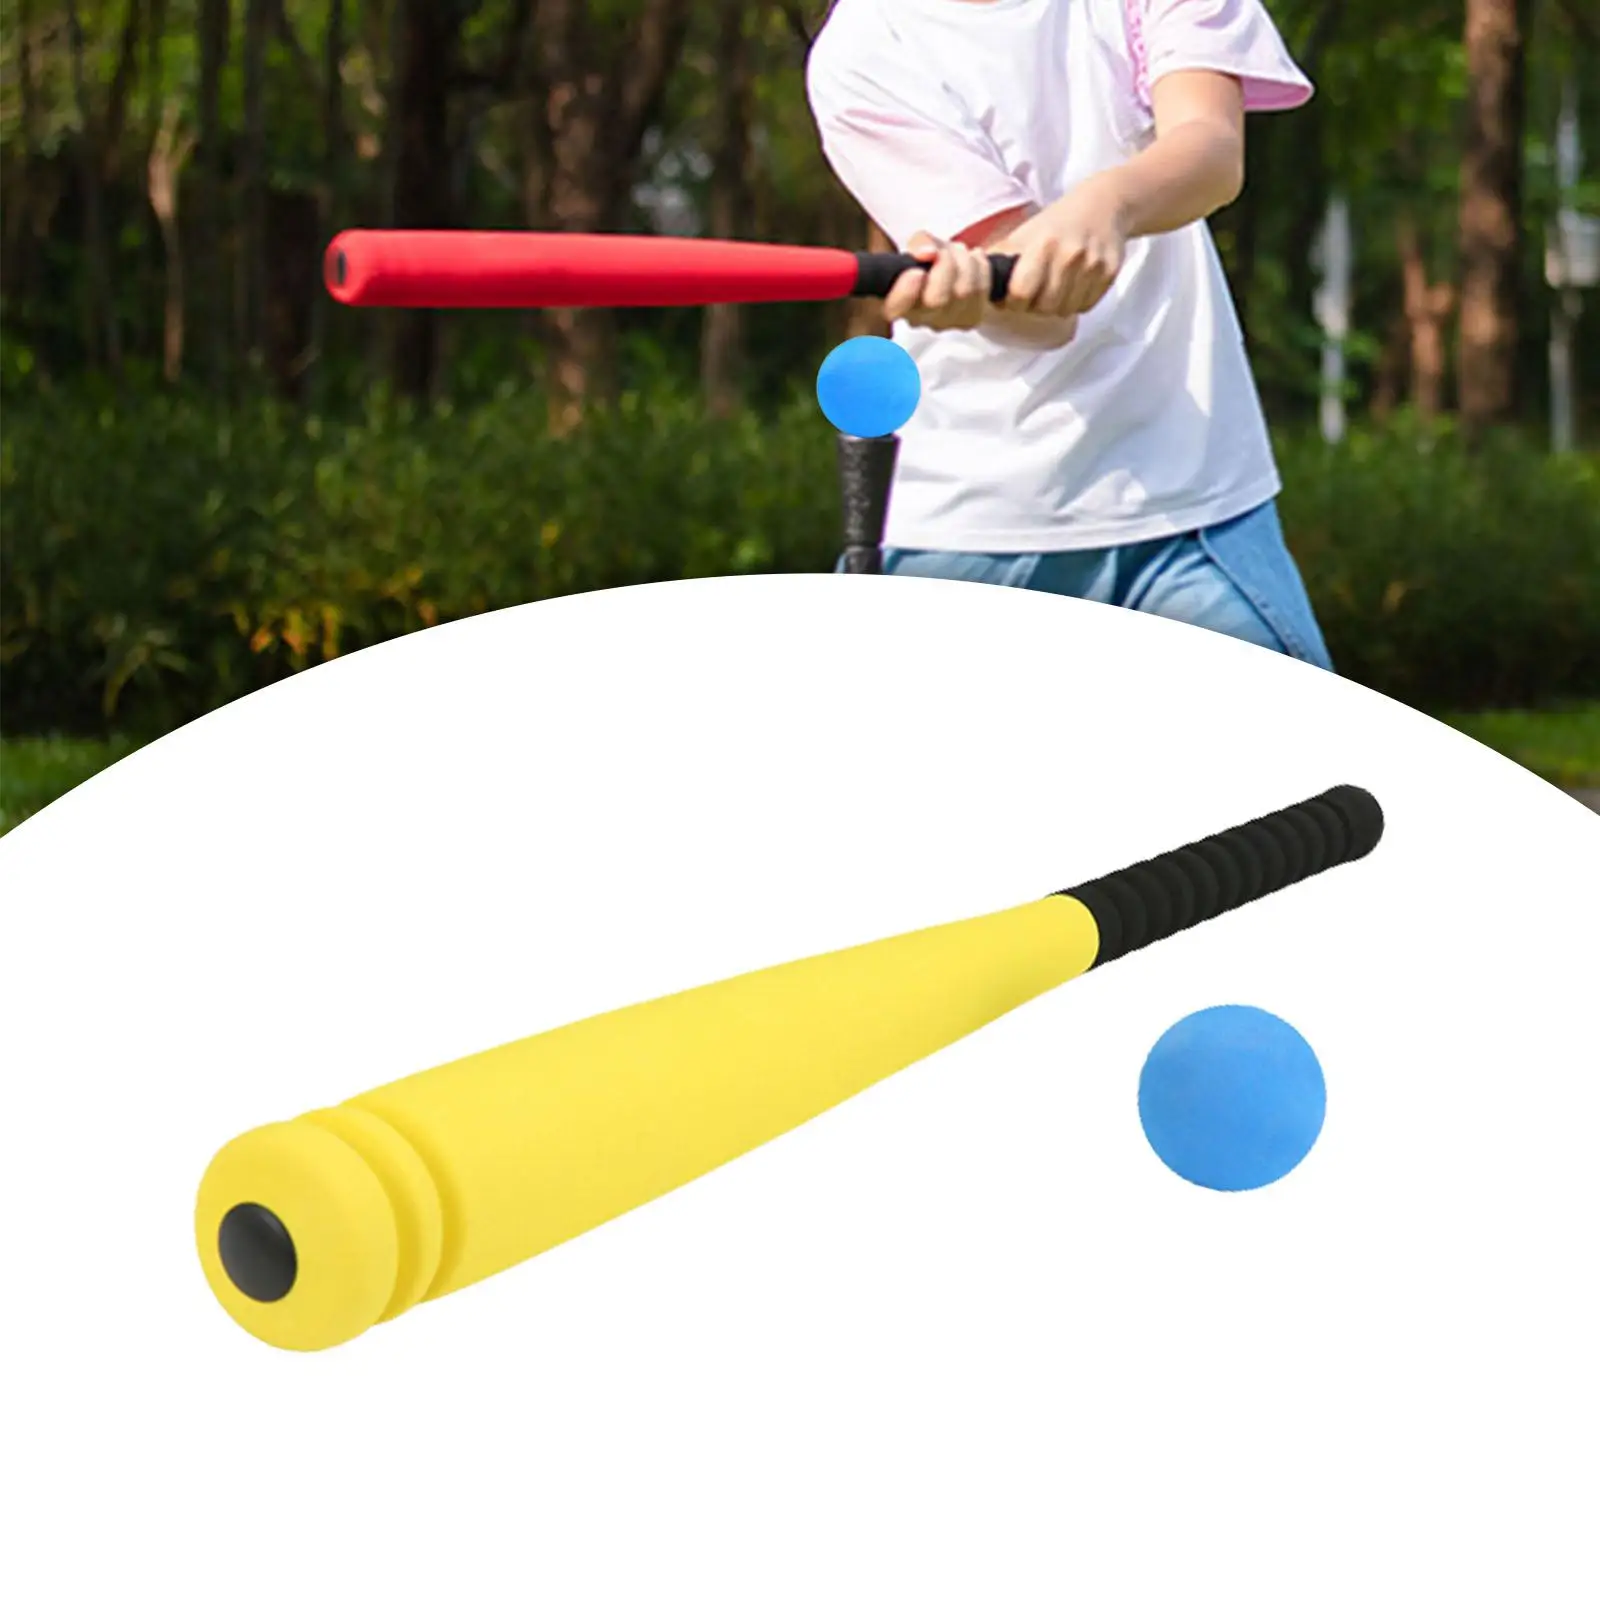 Sponge Baseballs Toy Youth Baseball Toyting Skills W/ Ball Kids Baseball Toy